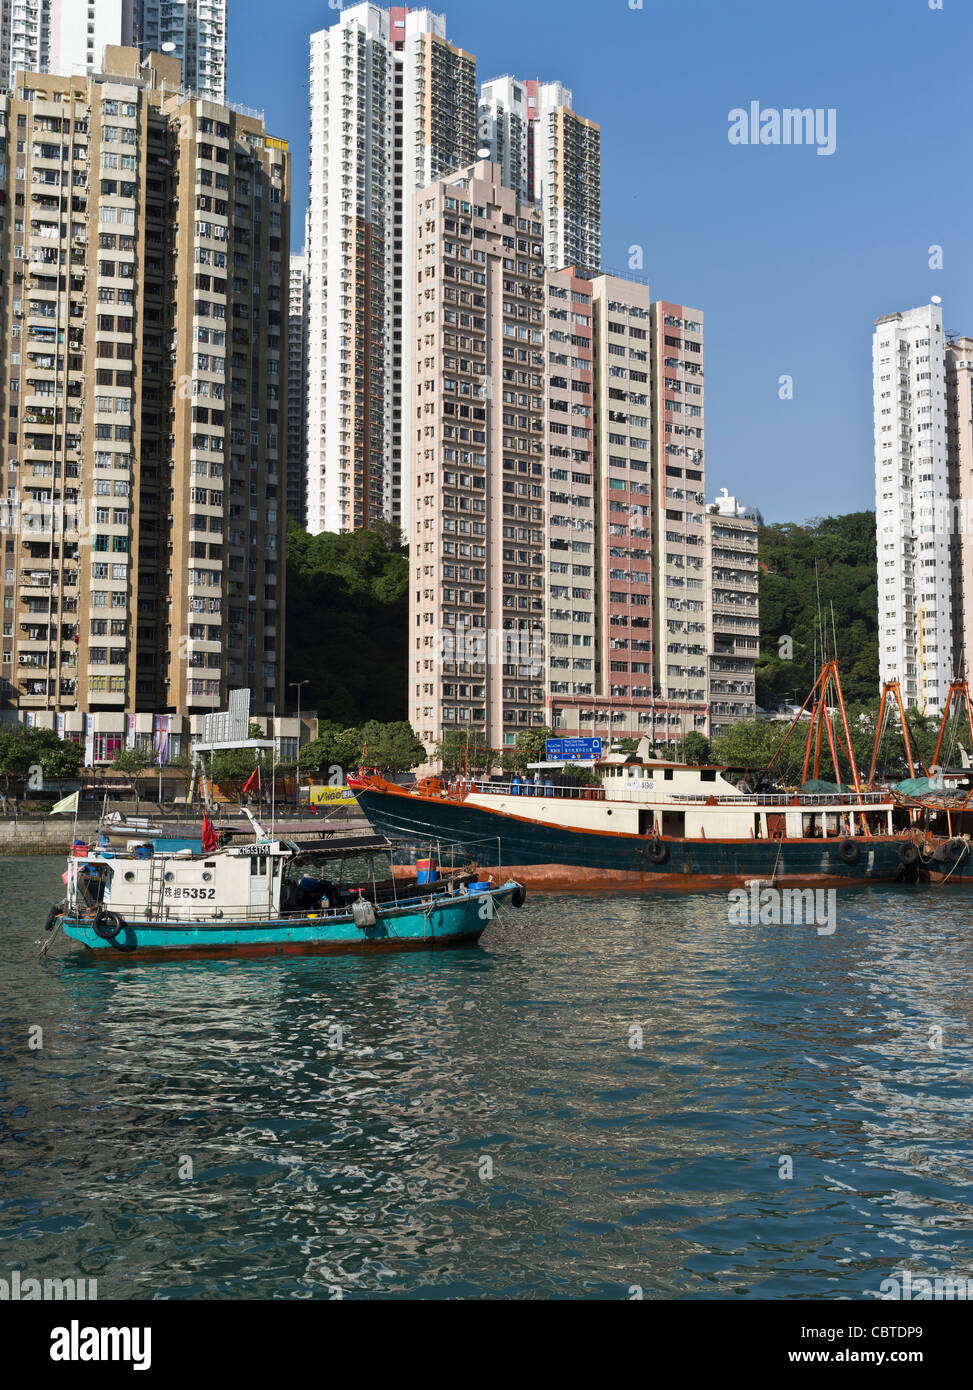 dh Chinesische Fischerboote ABERDEEN HONG KONG Boote im Hafen anchorage Wohnwohnungen Häuser südchinesischen Seehafen Stockfoto